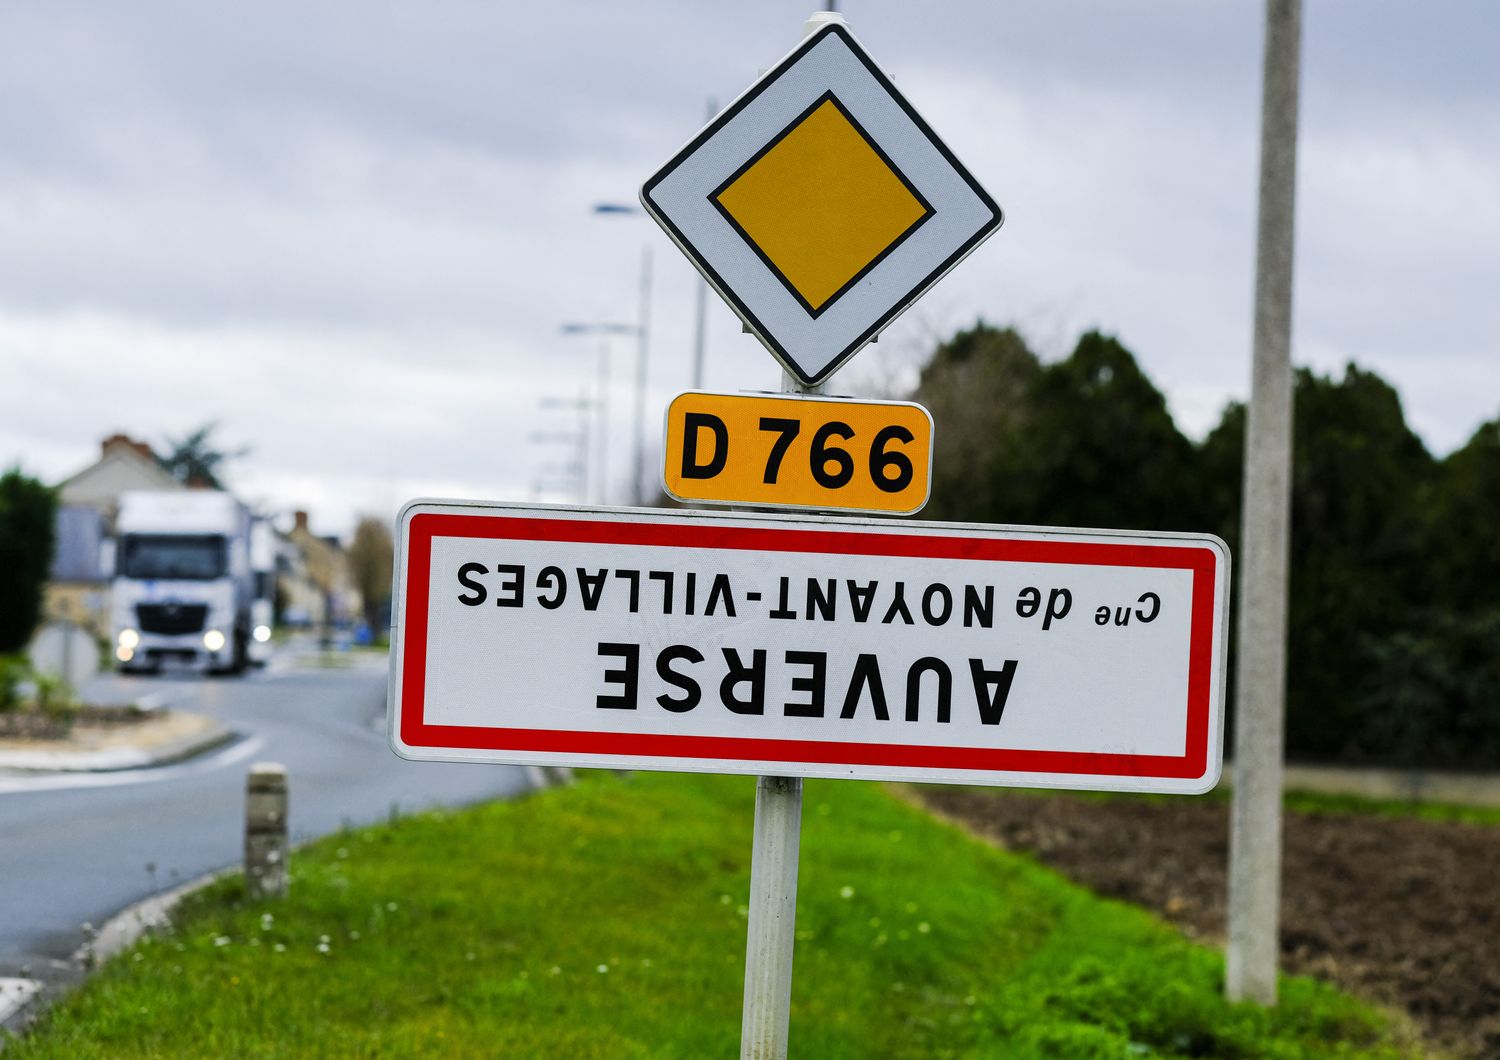 Indicazioni stradali capovolte nella Loira, Francia